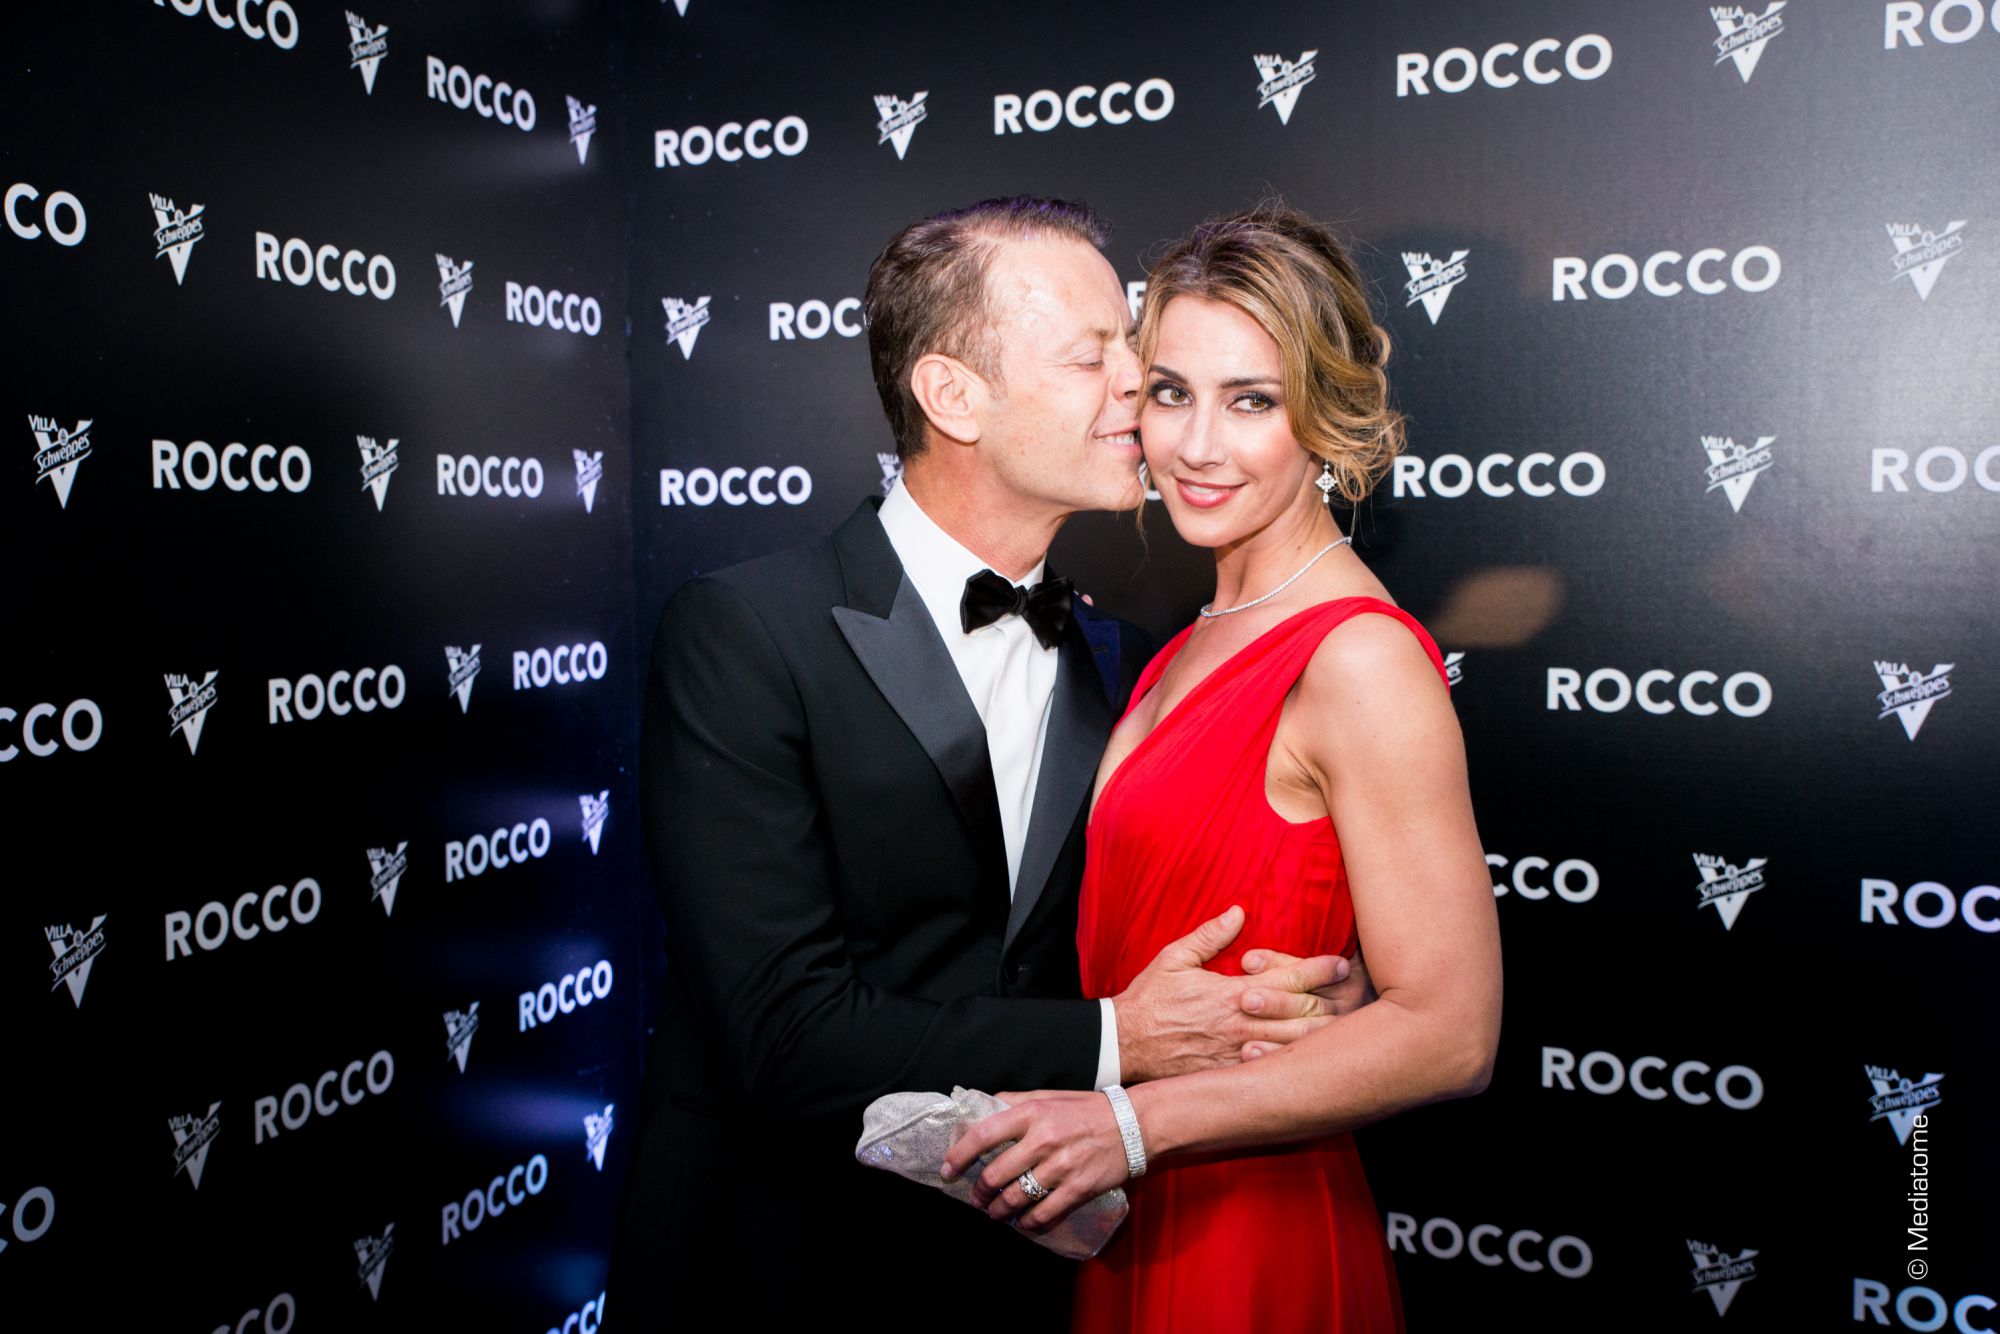 Rocco Siffredi et Rosa Carcciolo le 12 mai 2016, à la Villa Schweppes de Cannes